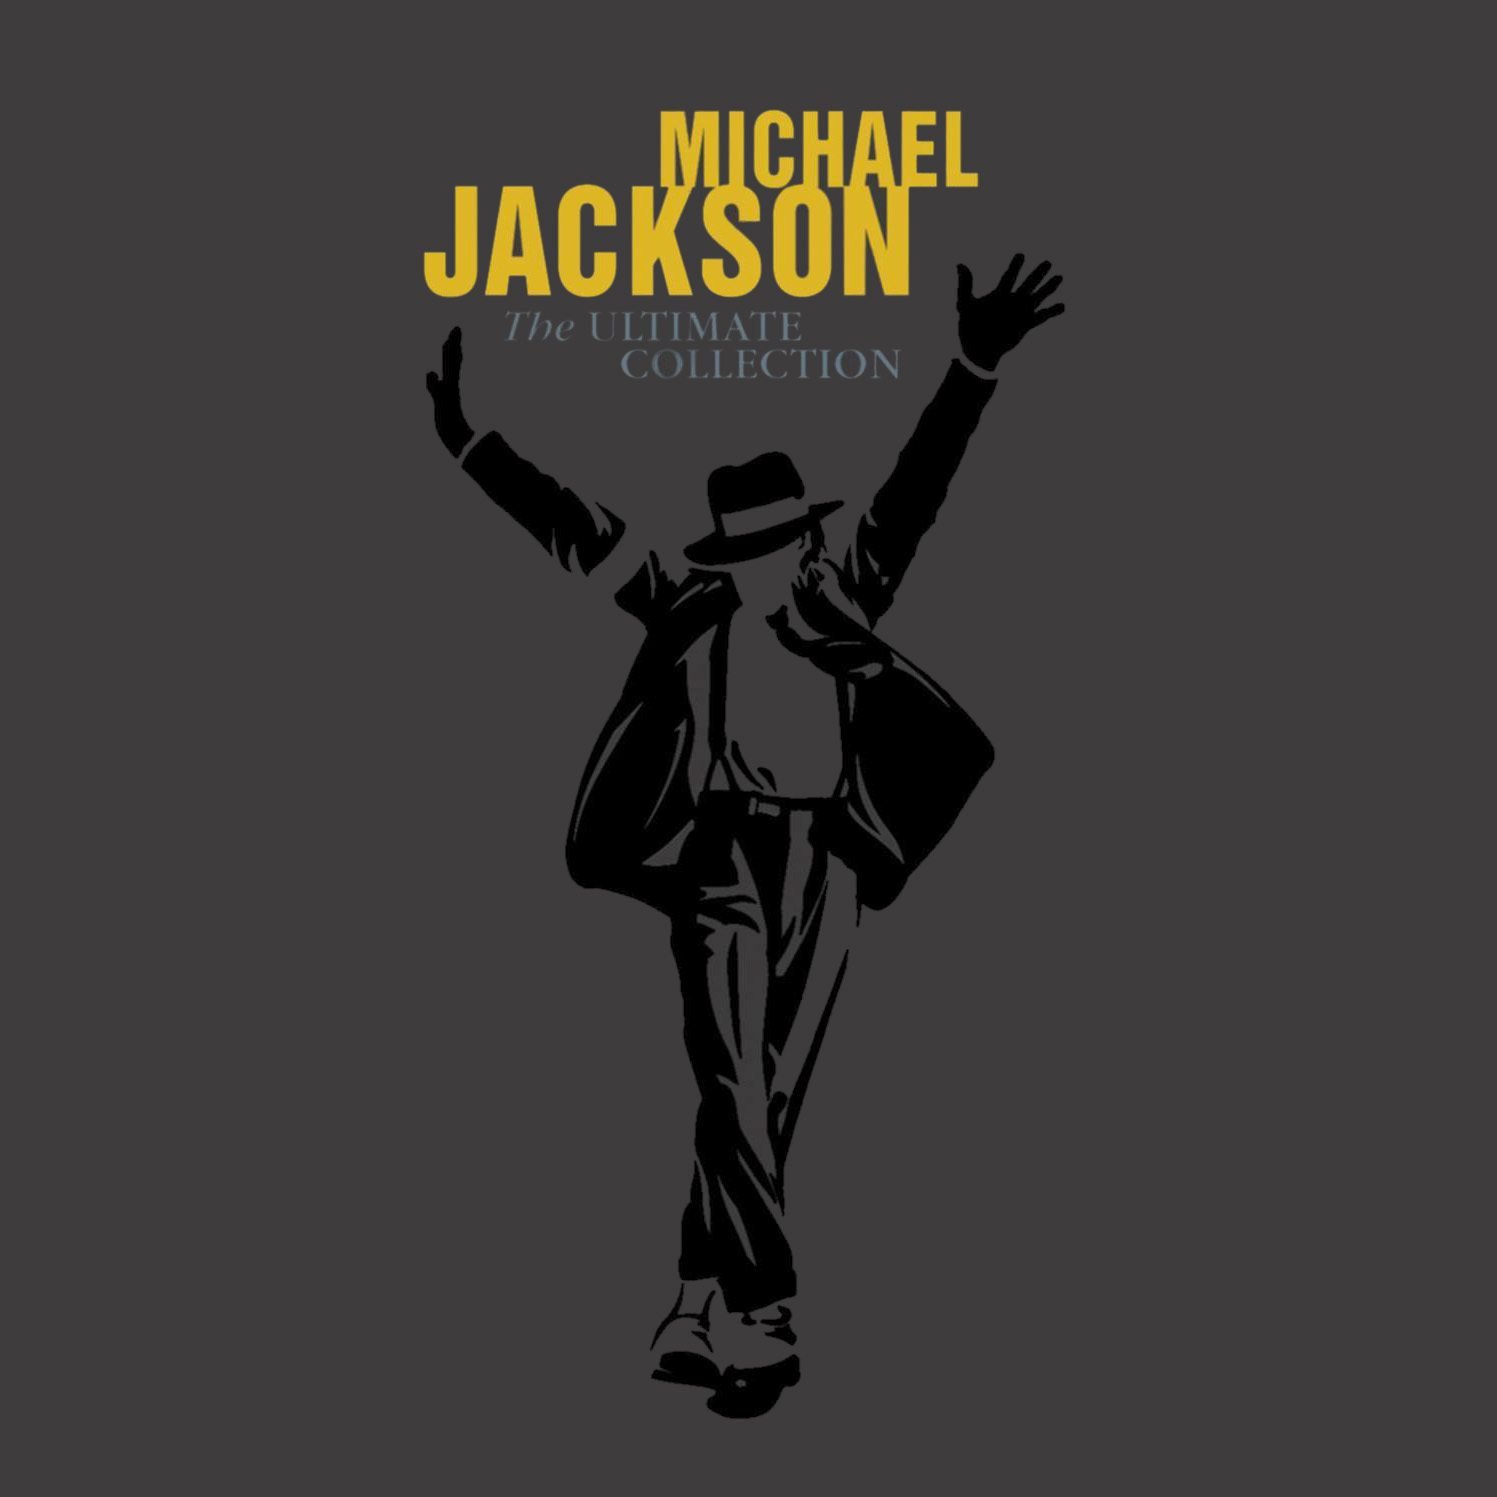 Michael jackson альбомы. Michael Jackson обложка. Michael Jackson обложки альбомов.